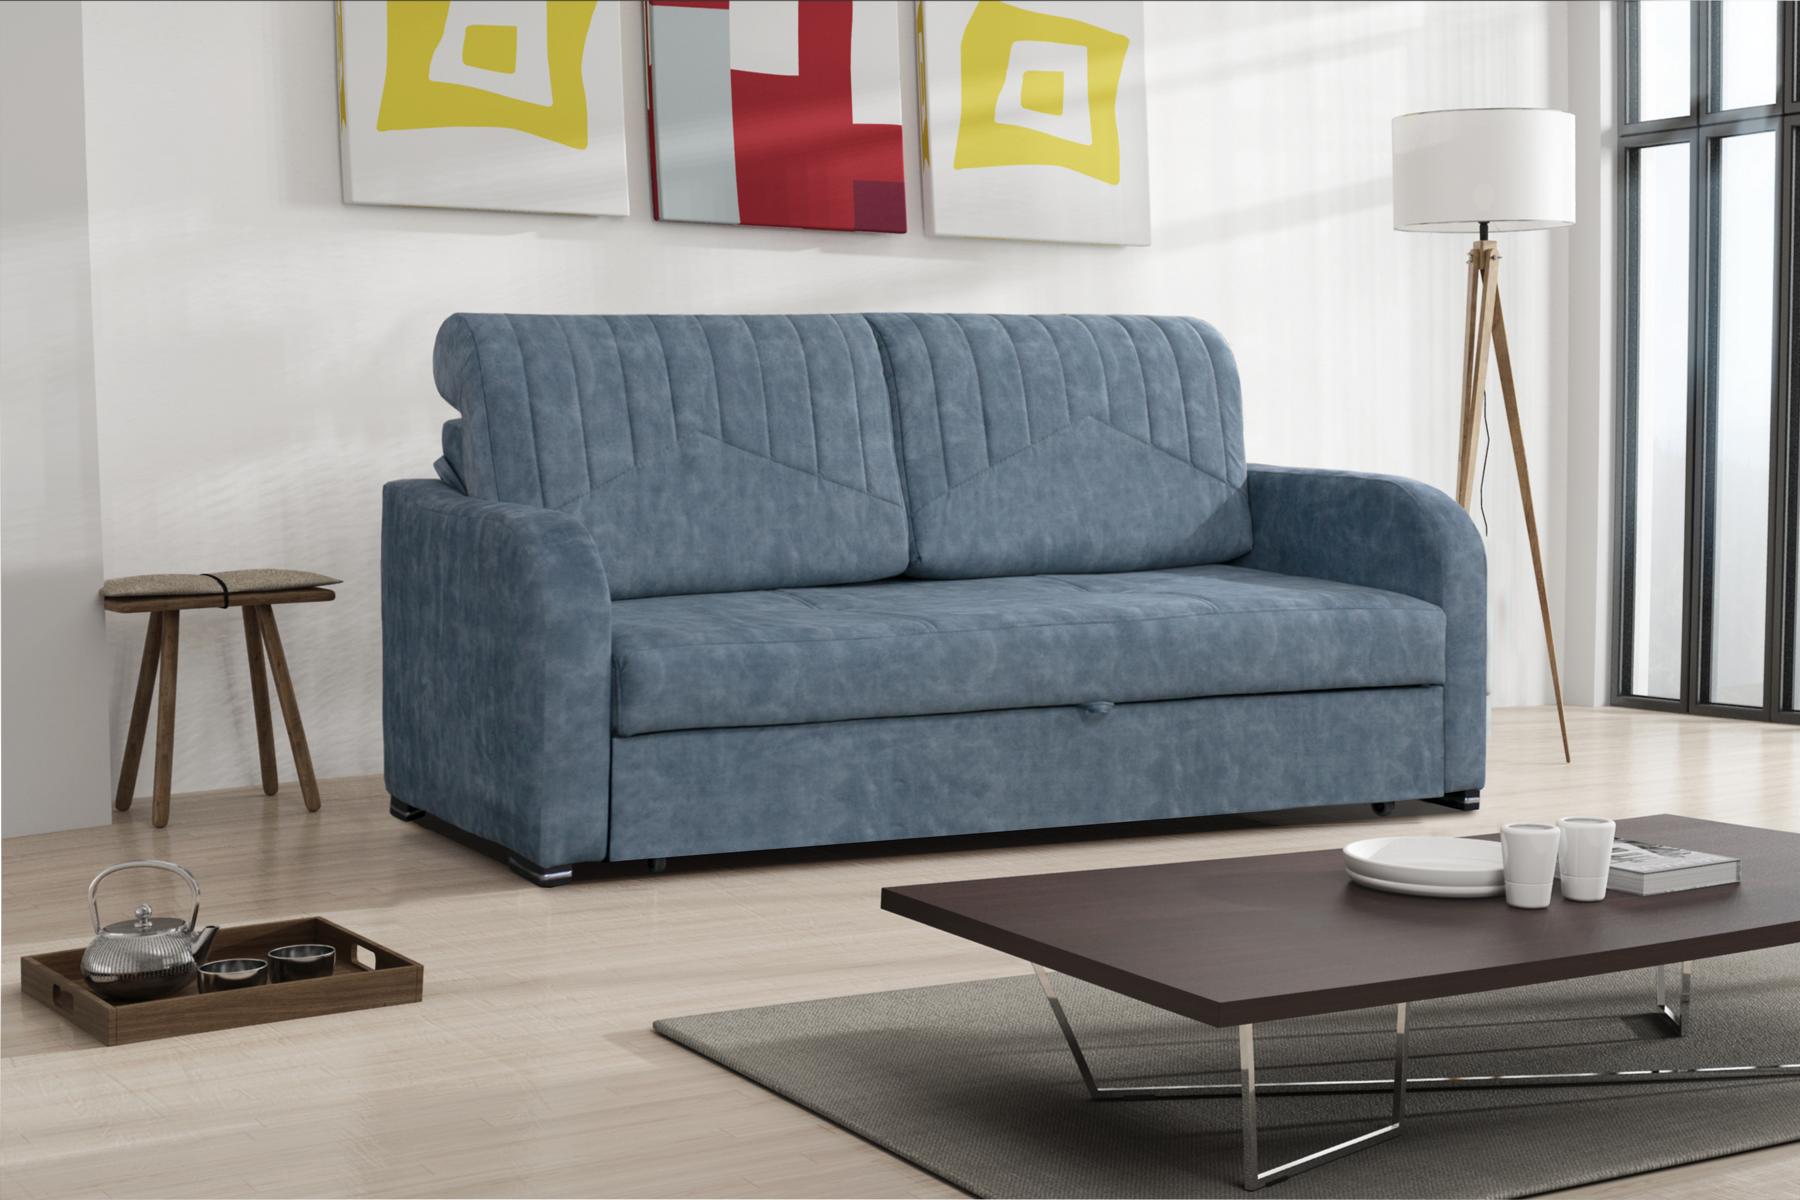 Wohnlandschaft Relax Samt Bettkasten Sitz Design Couch Lounge Sofa Schlafsofa